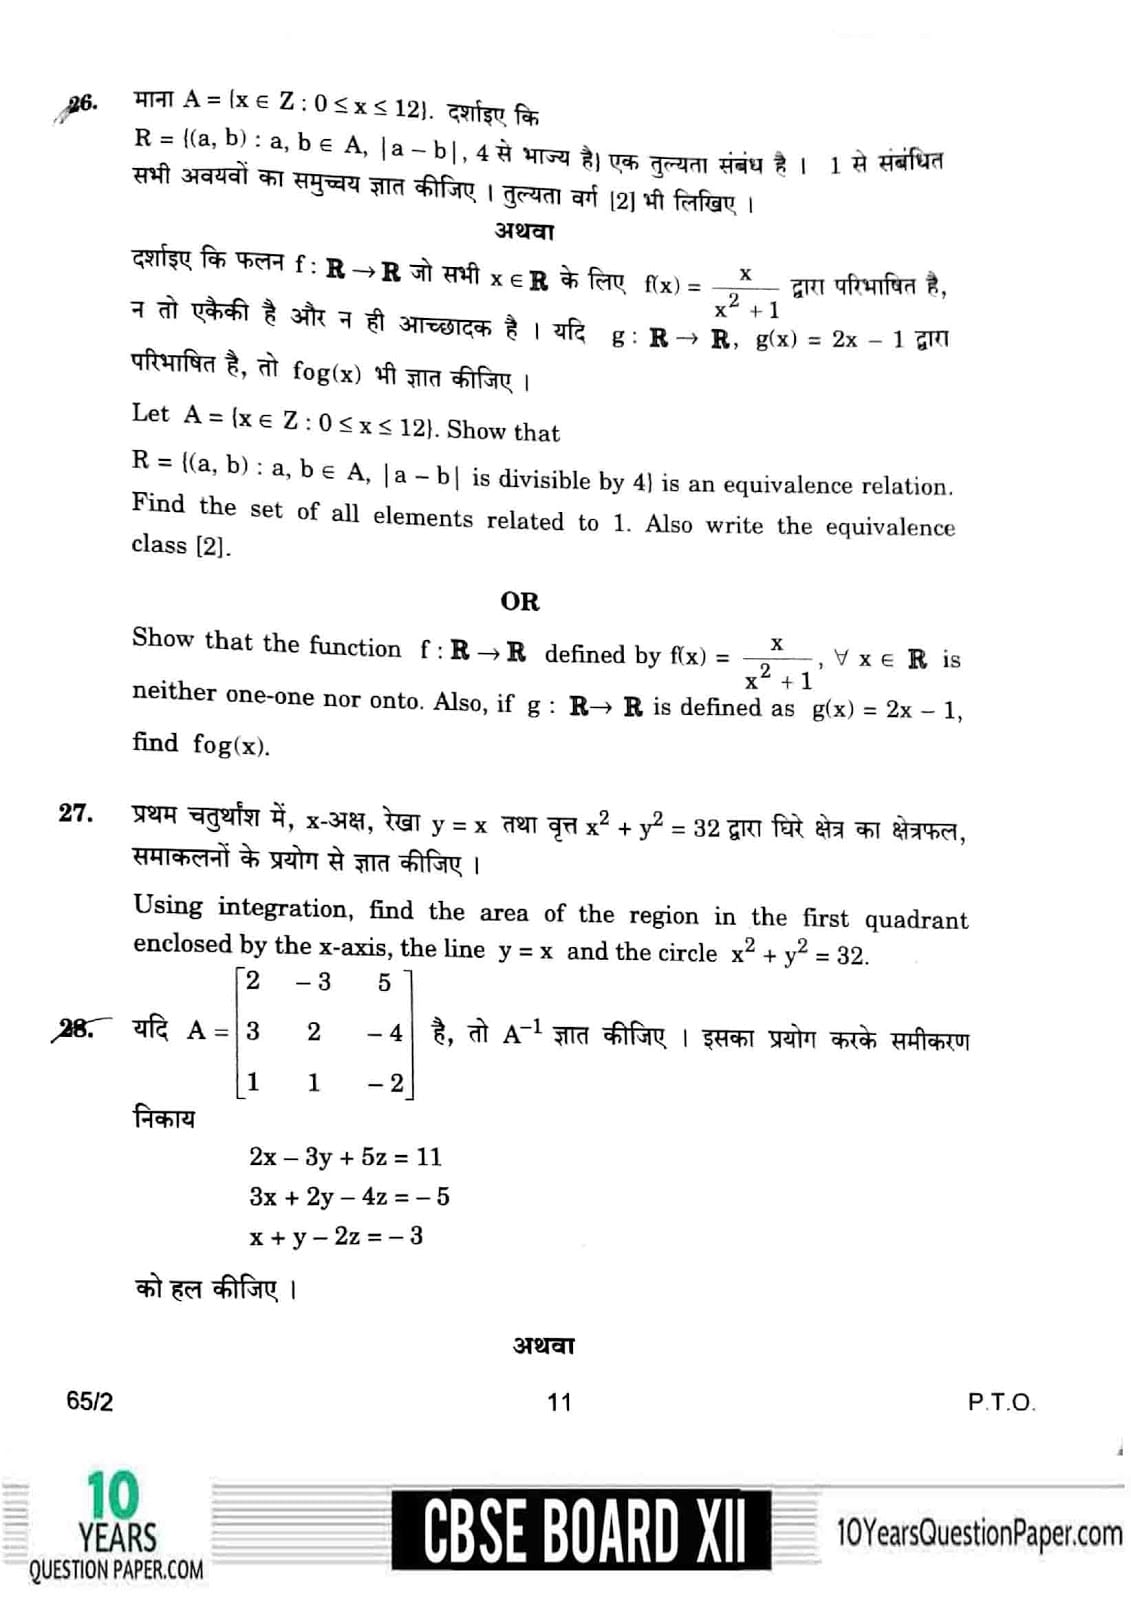 CBSE Class 12 Mathematics 2018 Question Paper